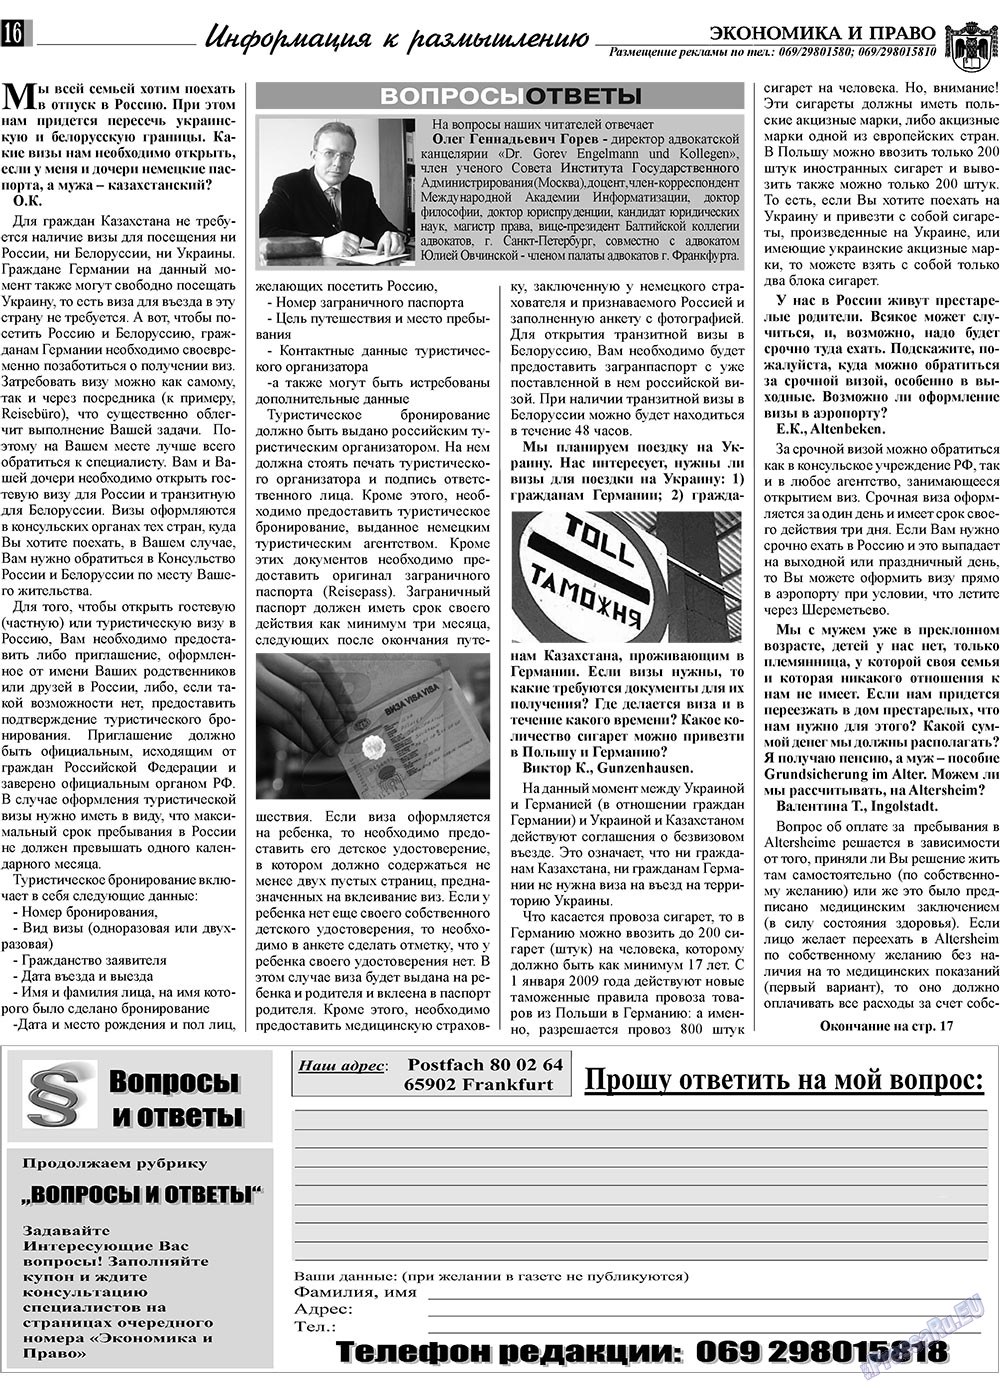 Экономика и право, газета. 2009 №8 стр.16